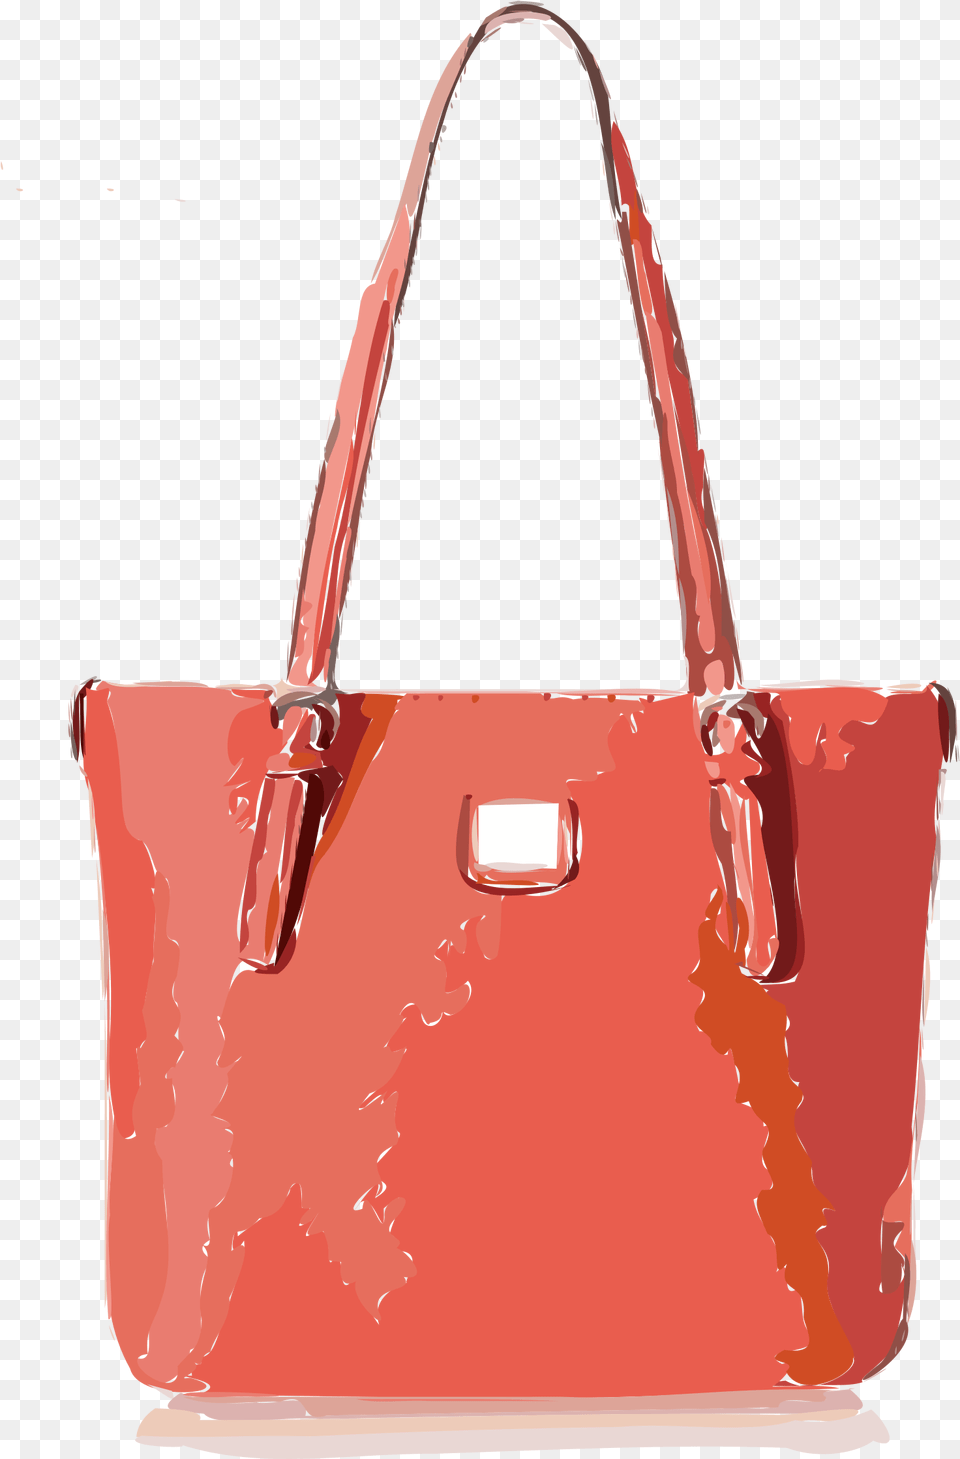 Orangish Red Handbag Clip Arts Clip Art, Accessories, Bag, Purse, Tote Bag Png